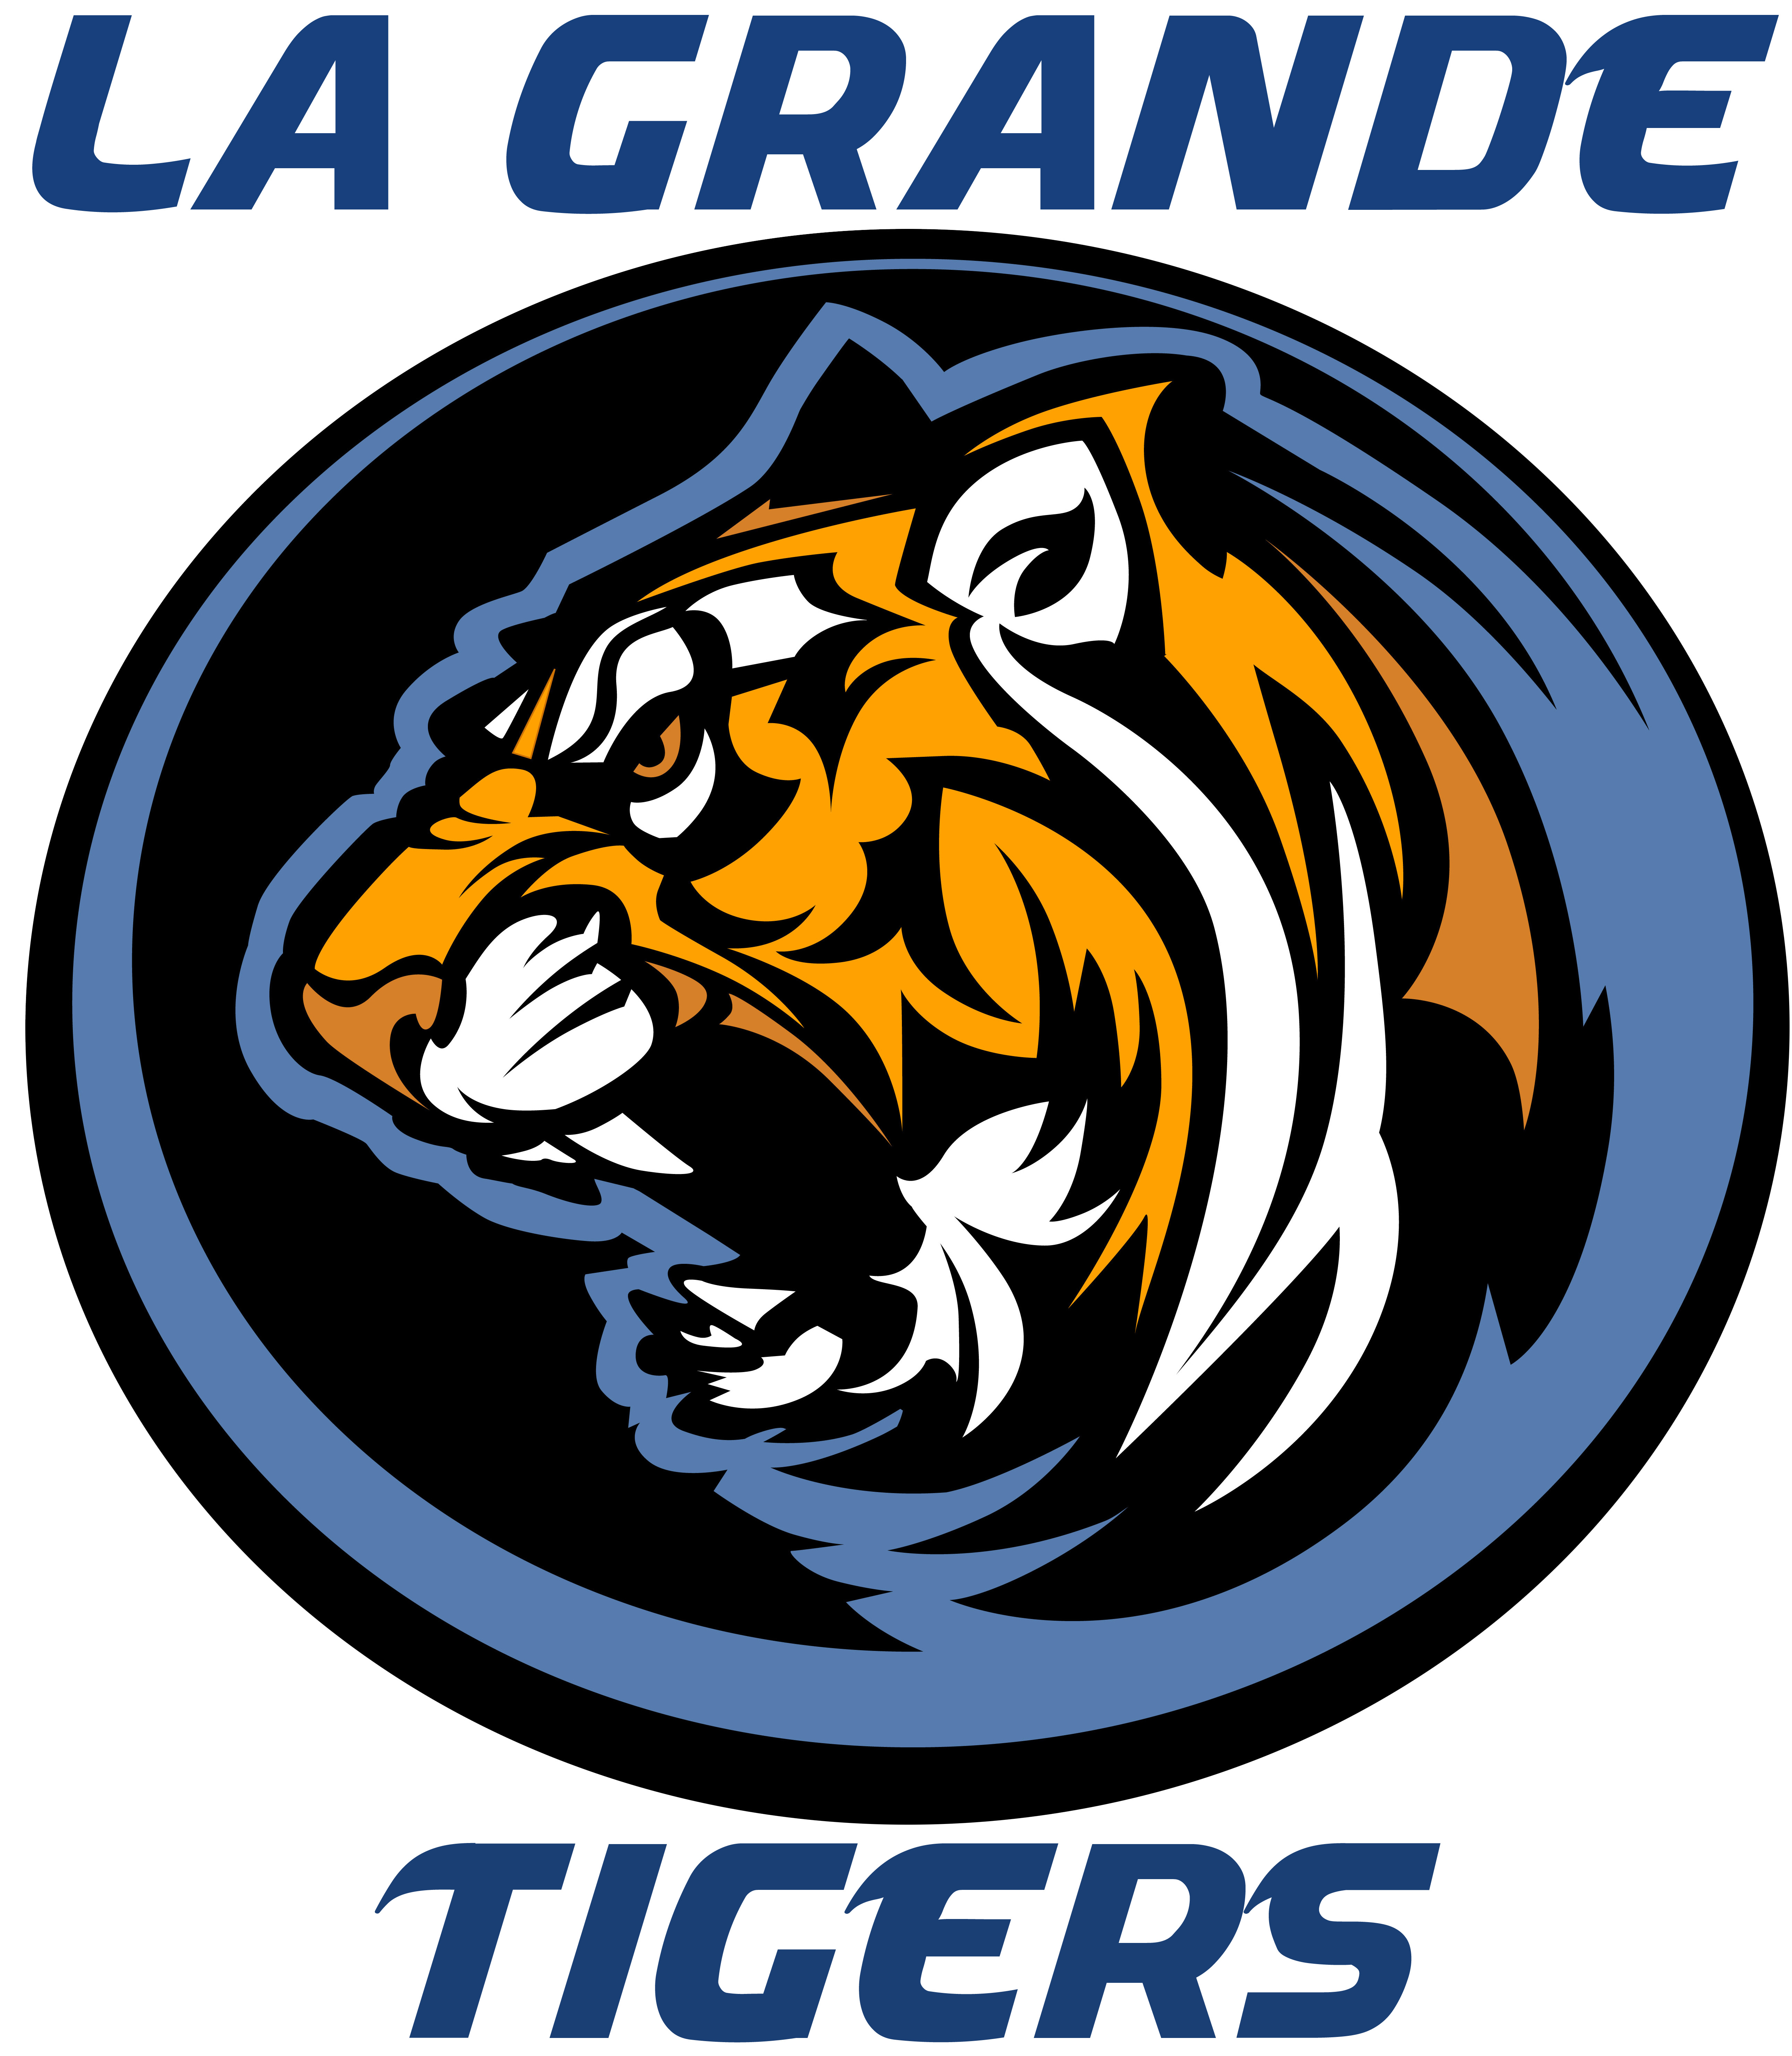 La Grande High School Tiger Logo